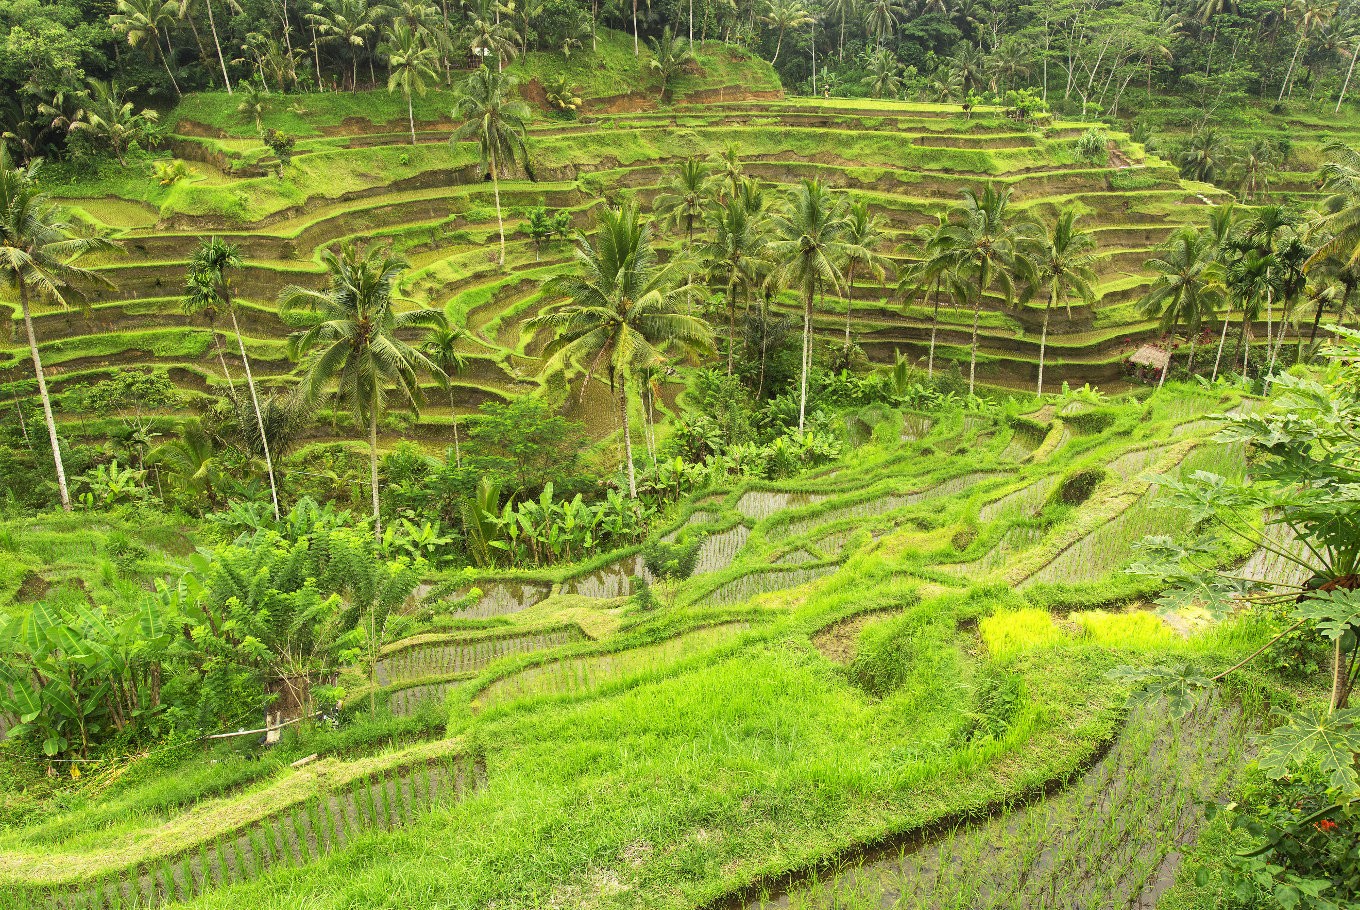 Terraced paddy fields in Ubud, Bali. (Shutterstock/File)